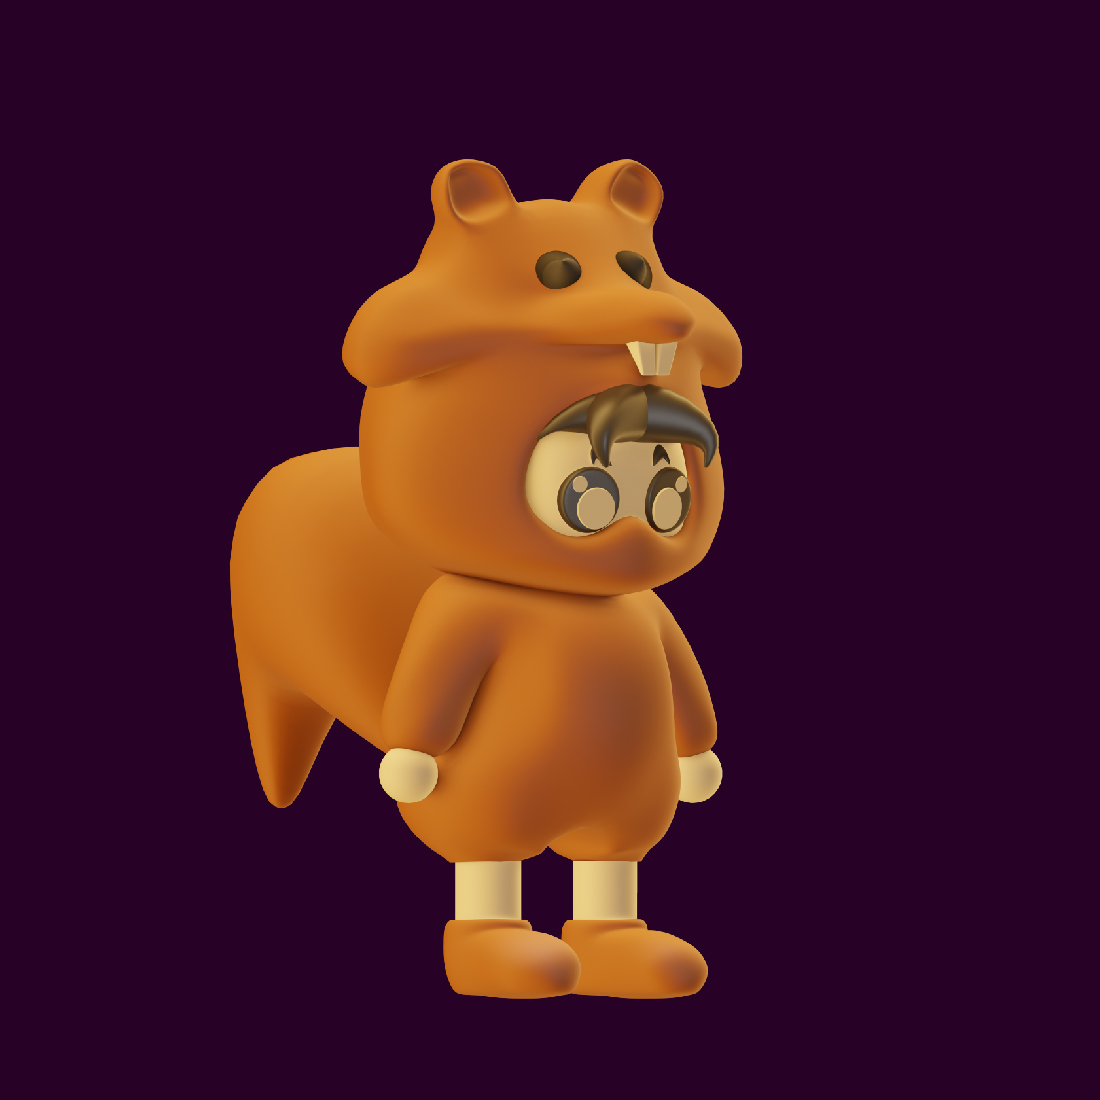 Cartoon bear with a smaller bear on his back.